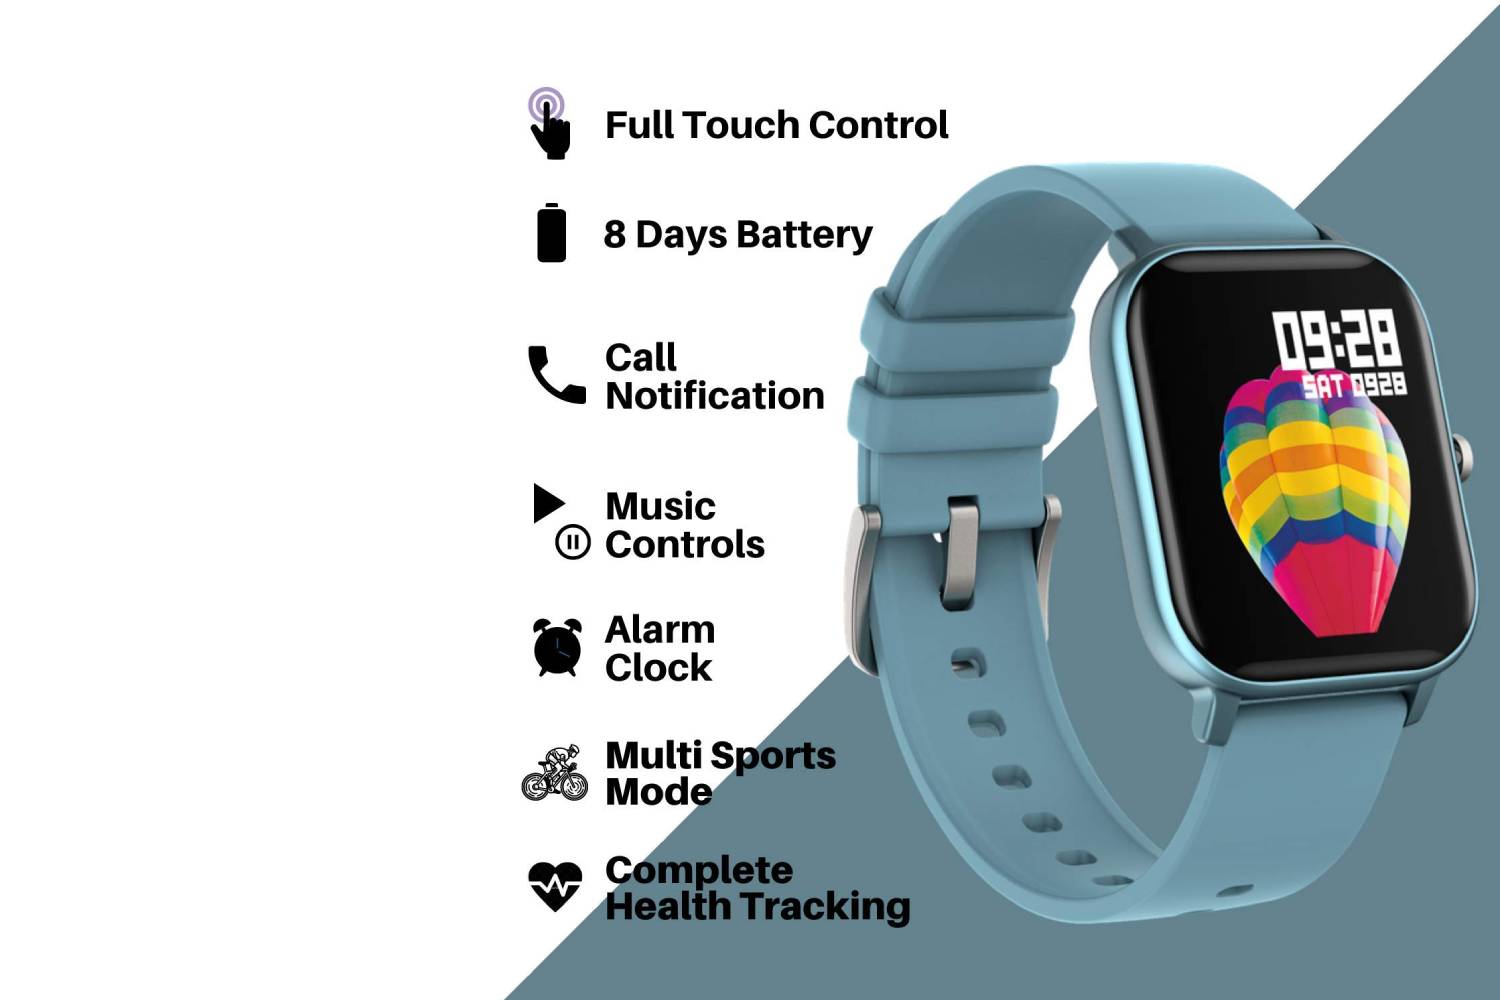 Fire-Boltt Full Touch Smart Watch 1’4 inch HD - Blue